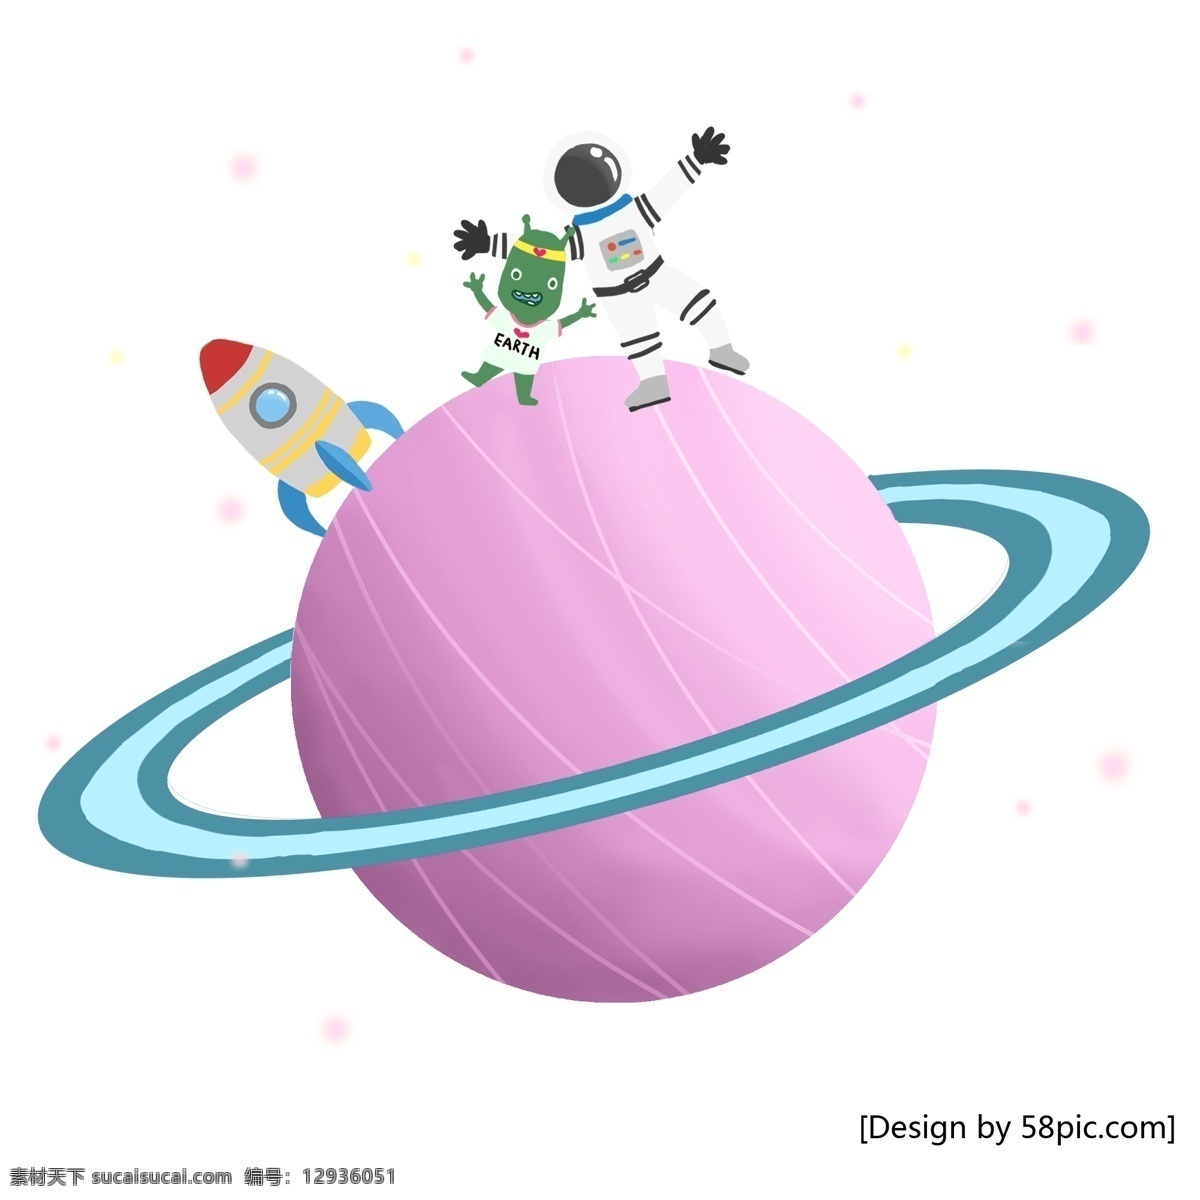 星球 外星人 宇航员 粉色 透明 清新 手绘 风 元素 星宿 外太空 可爱 卡通 手绘风 火箭 科技风 幻灯片 装饰素材